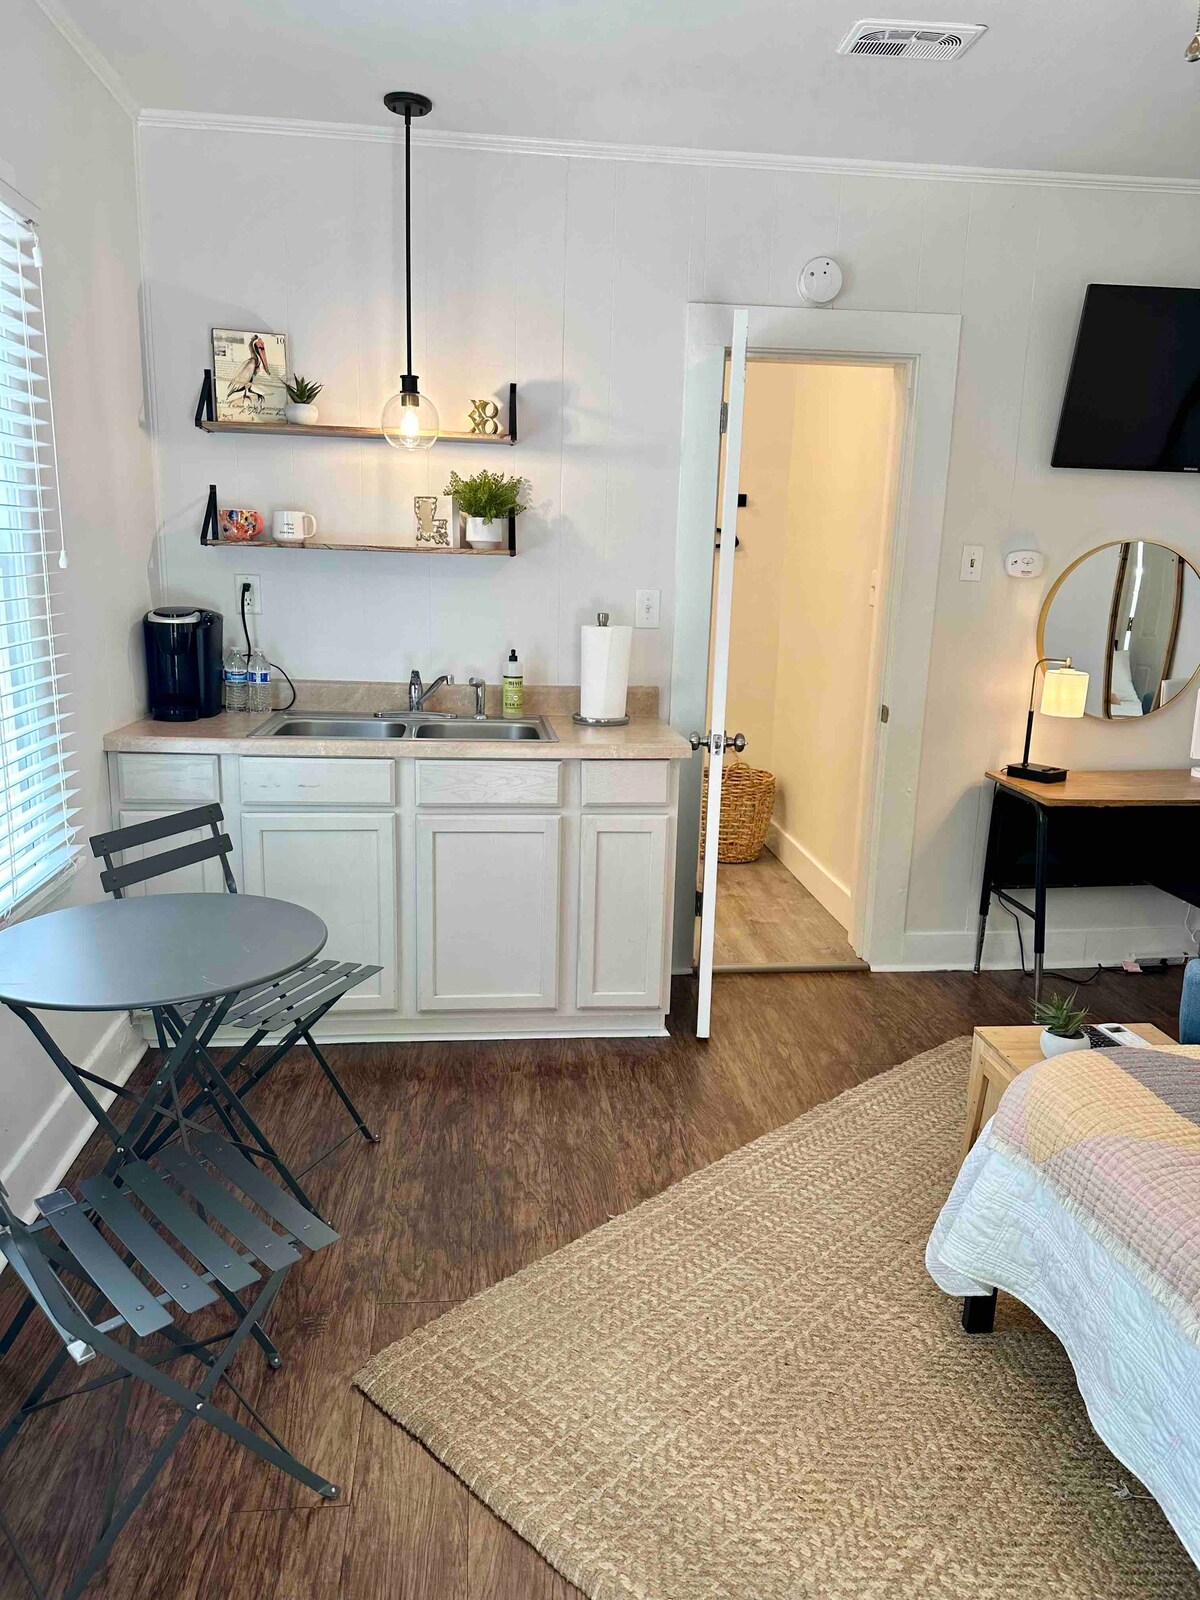 简洁、干净、装修的单间公寓